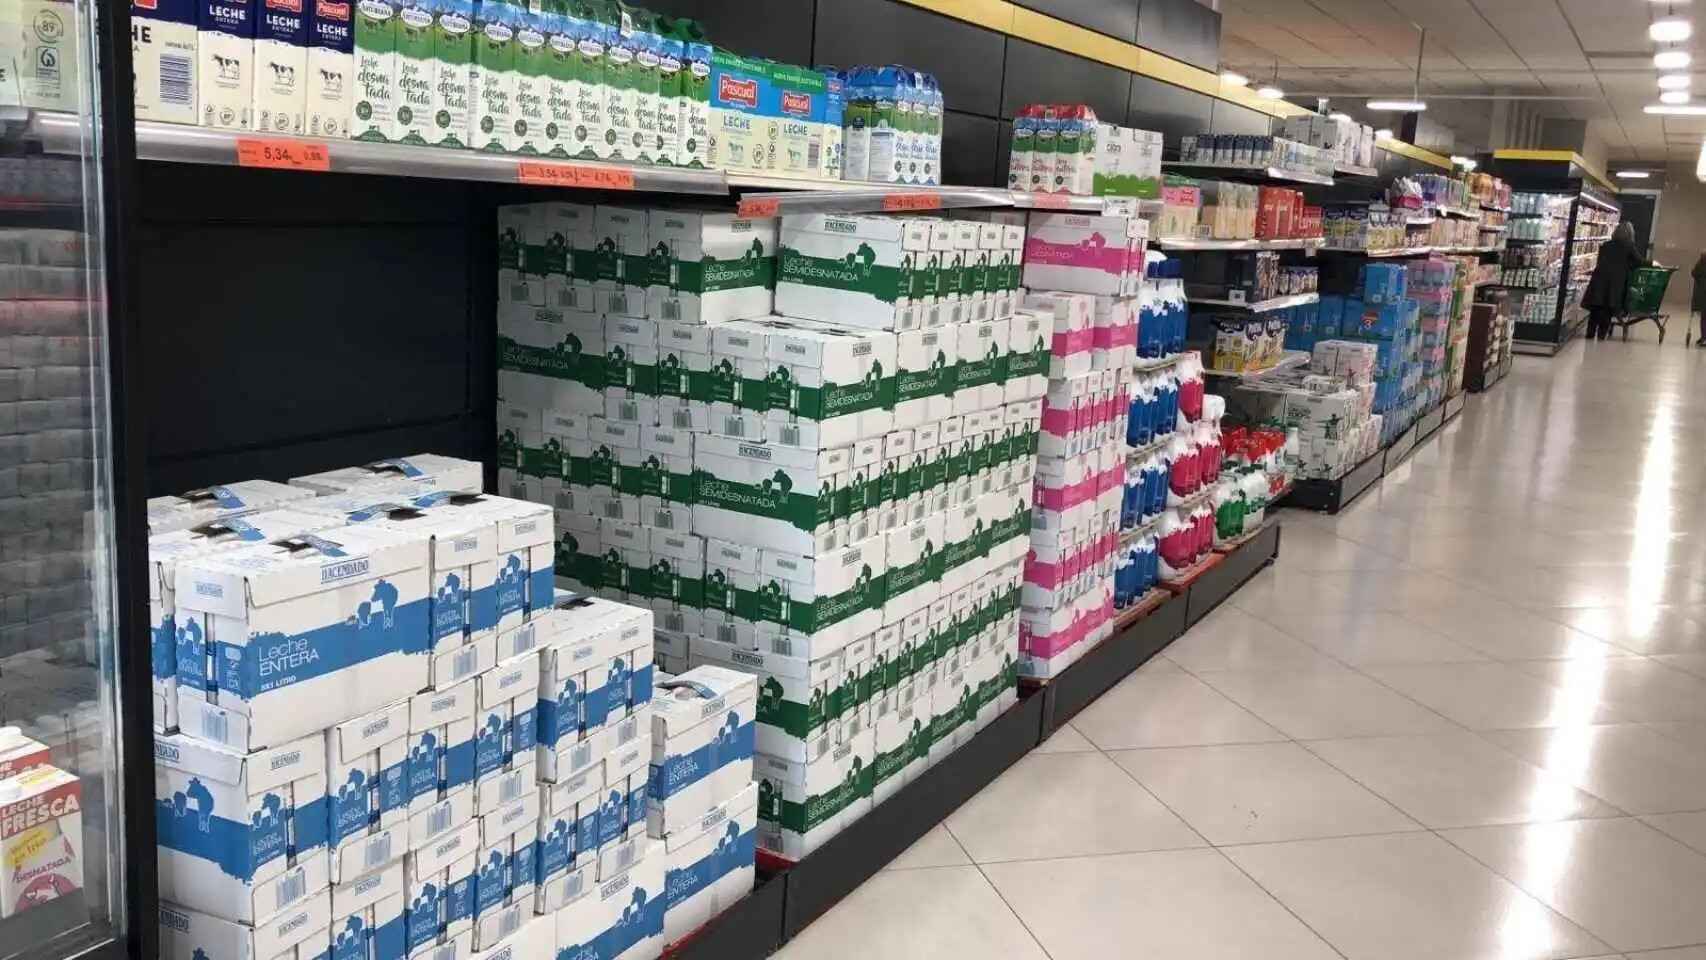 Lineal de leches del supermercado.